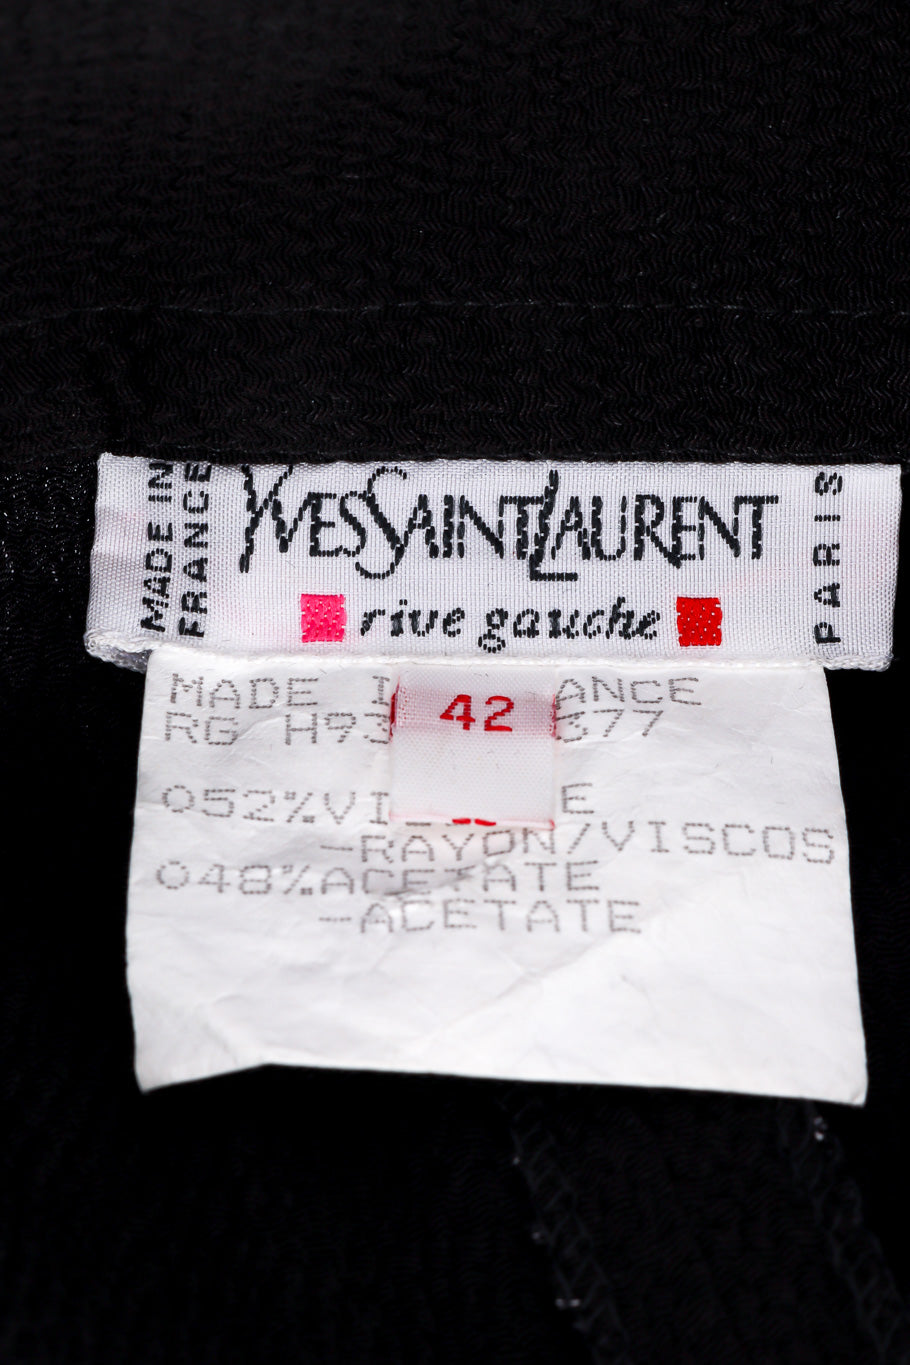 Wrap trouser by Yves Saint Laurent label close  @recessla